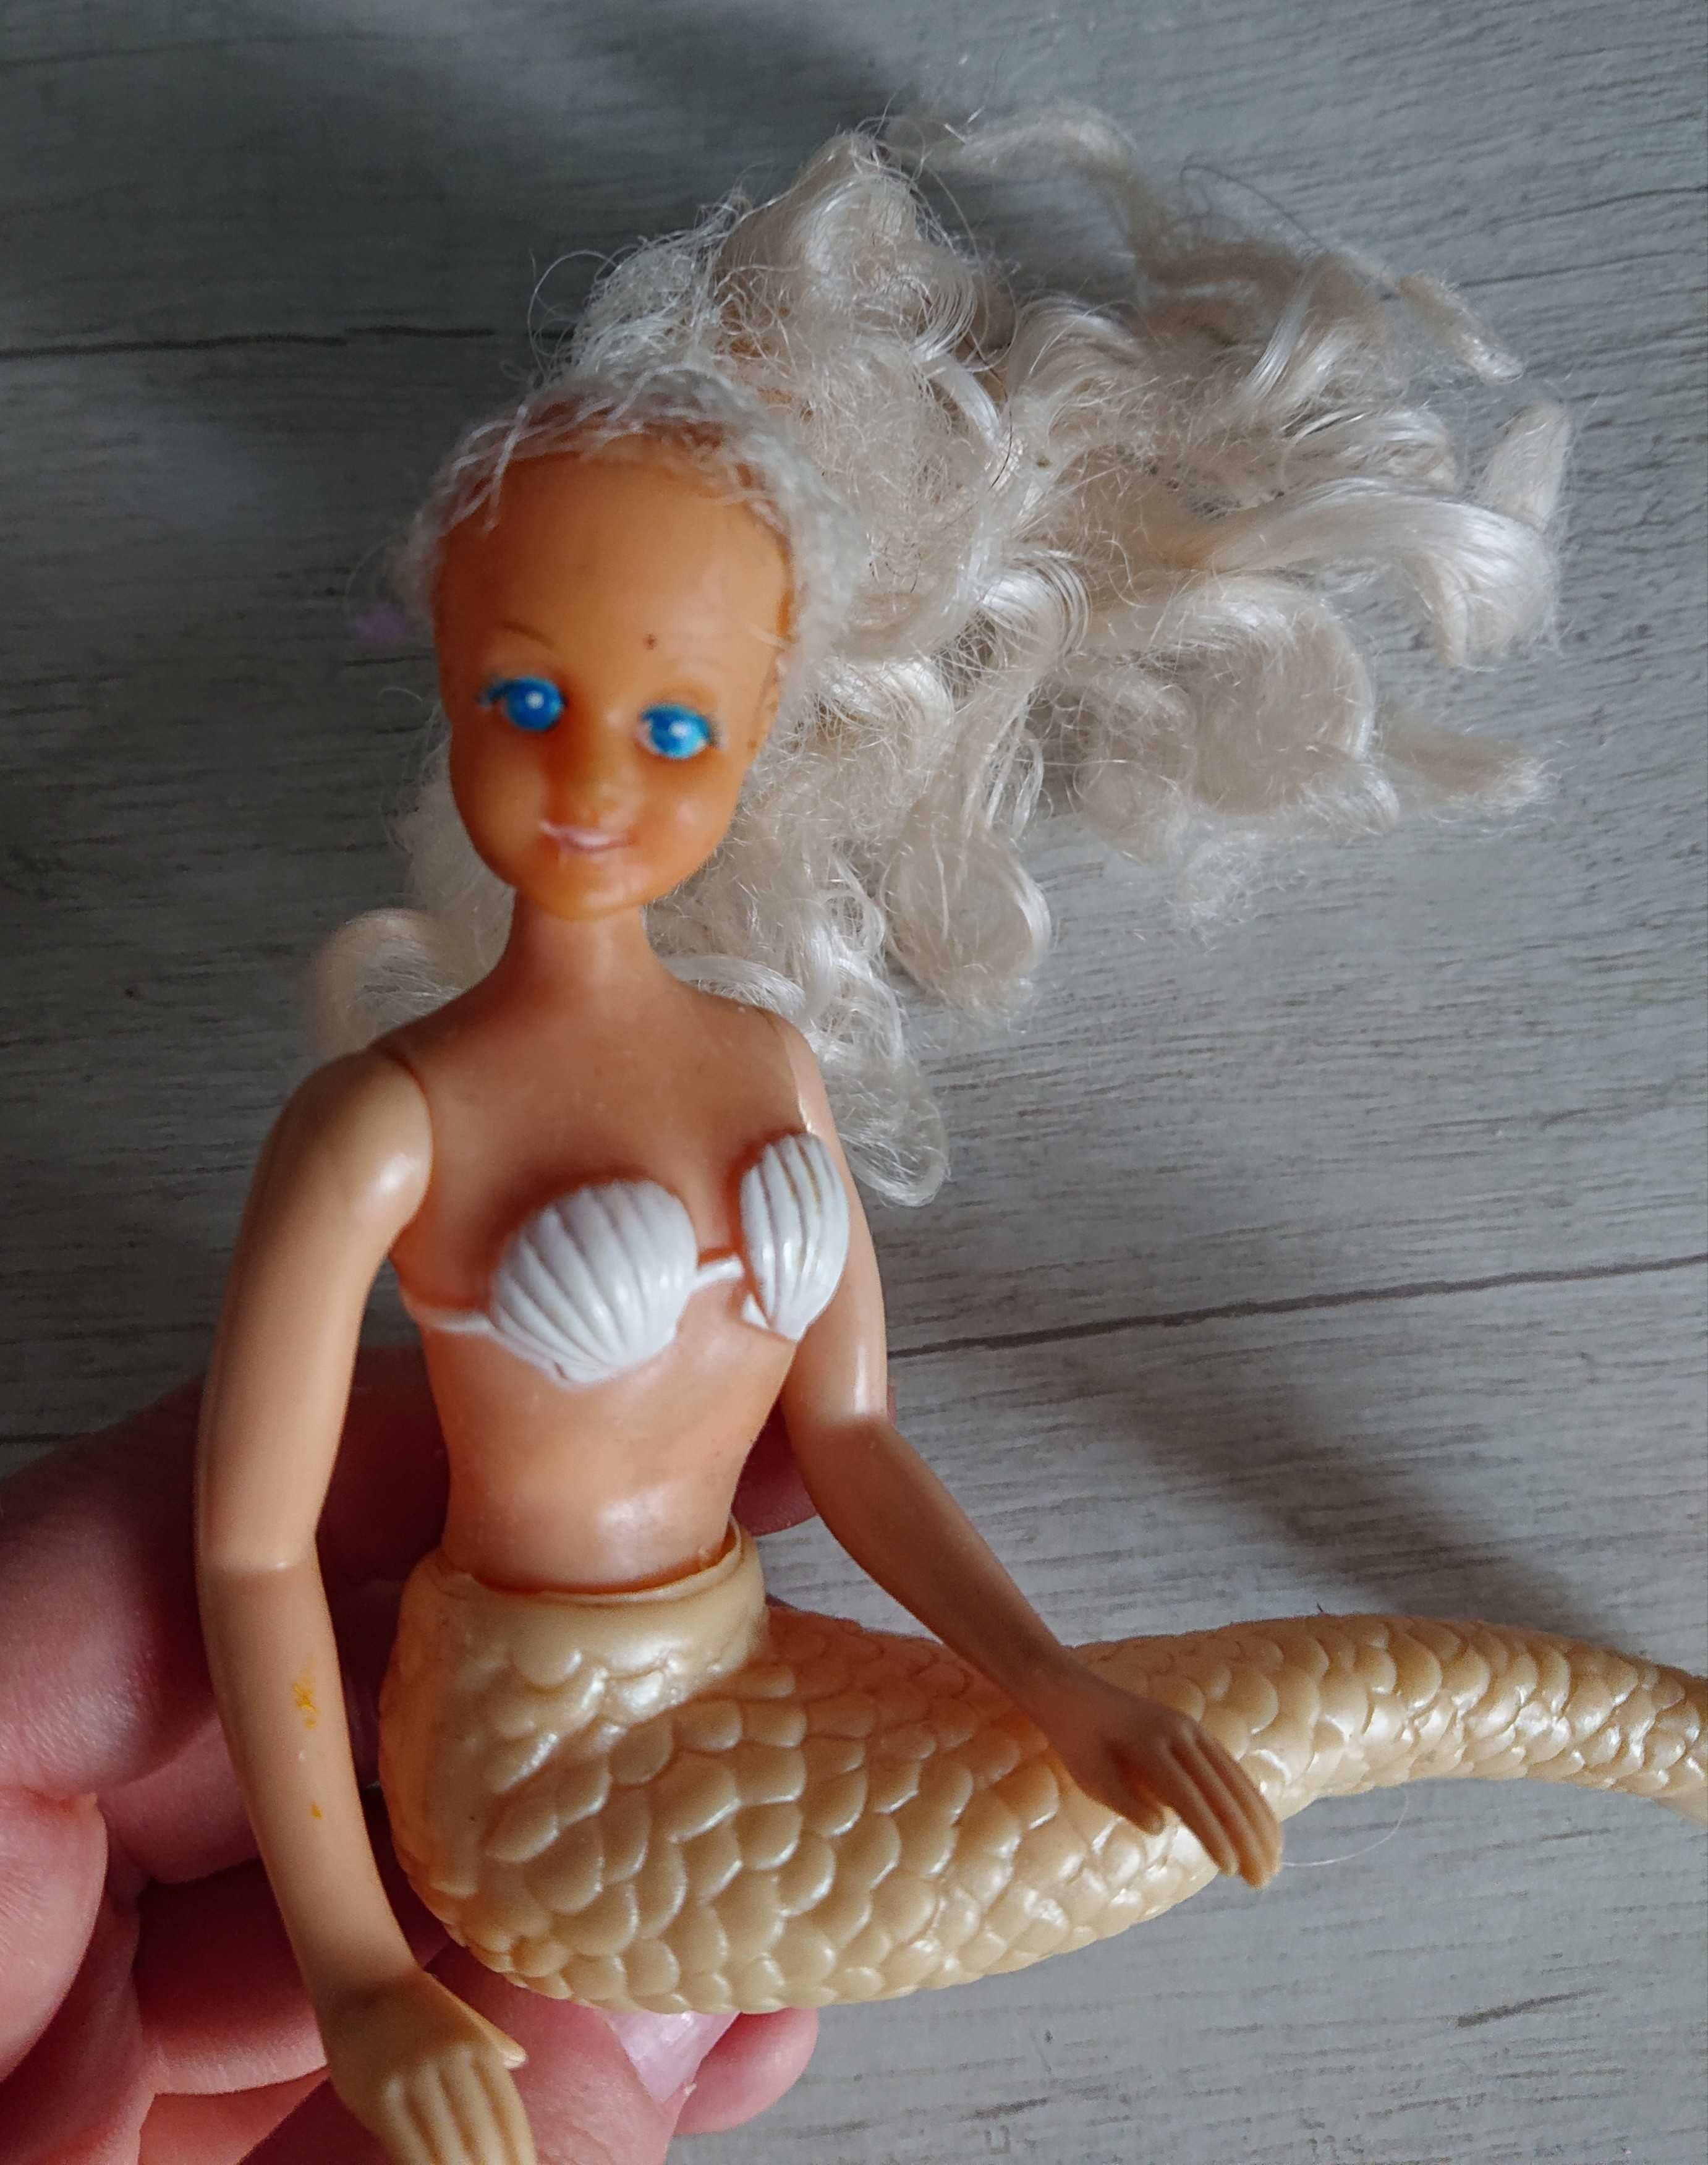 Кукла фигурка русалочка винтаж 90х